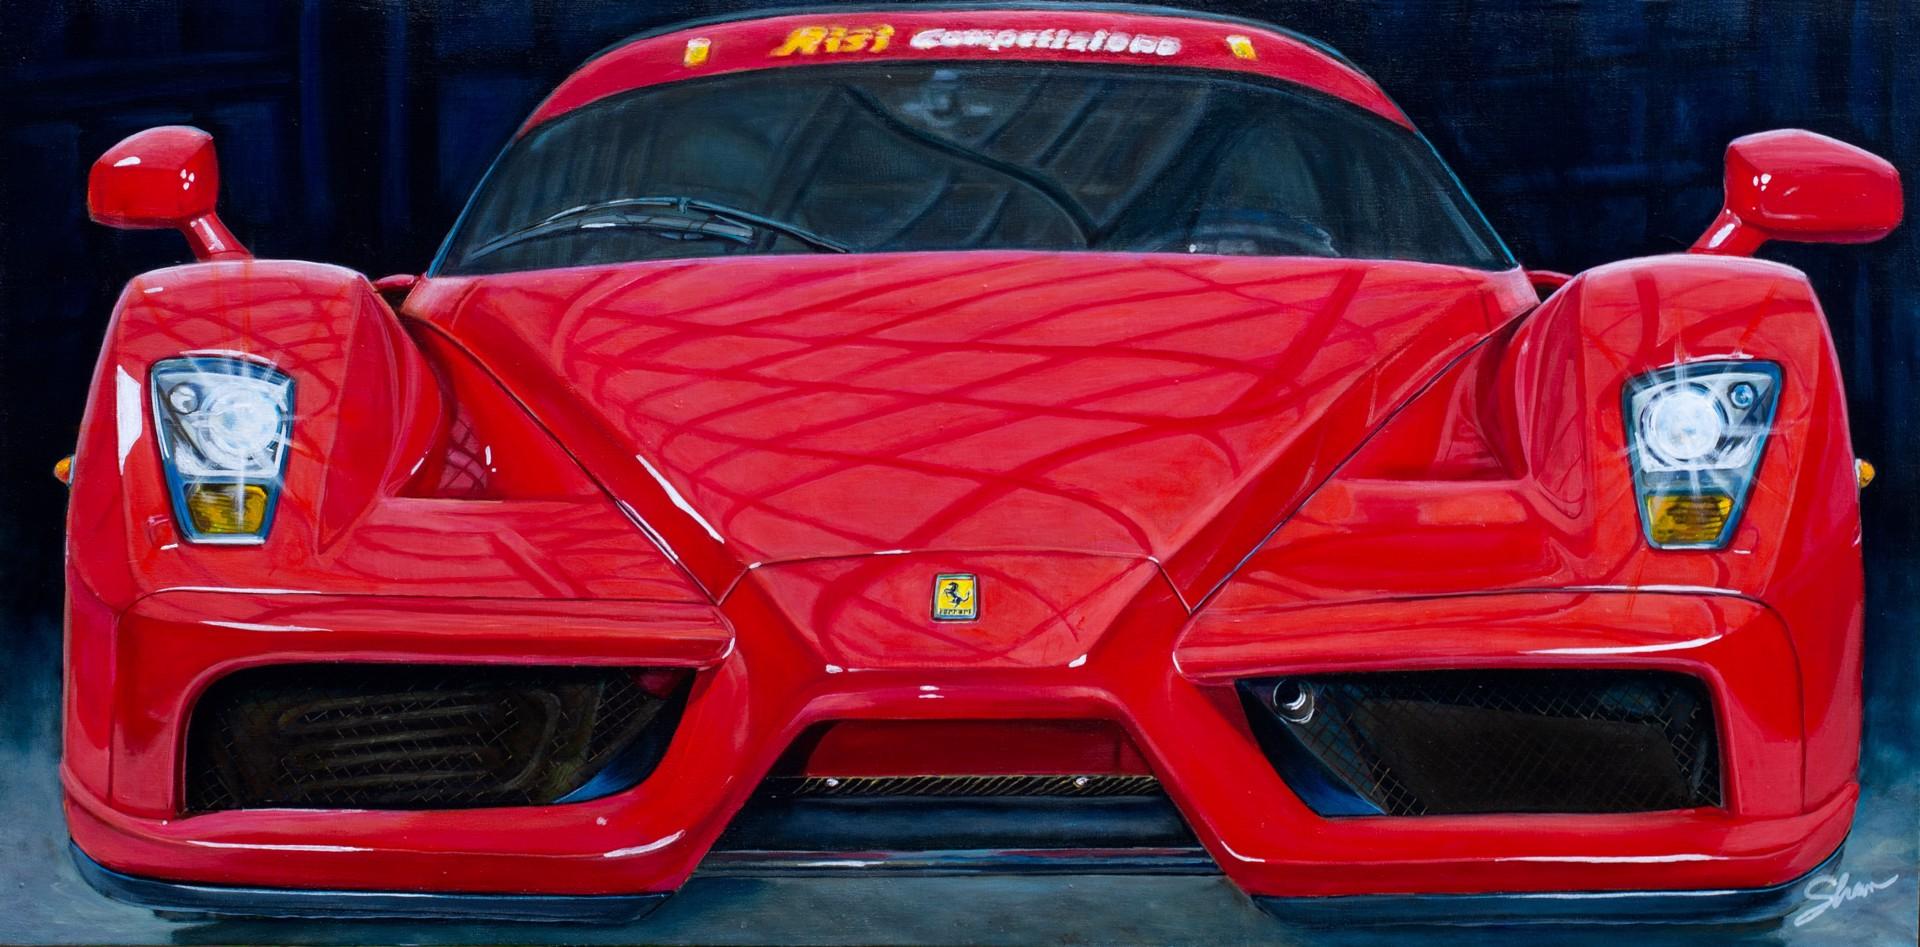 Ferrari 2003 Enzo